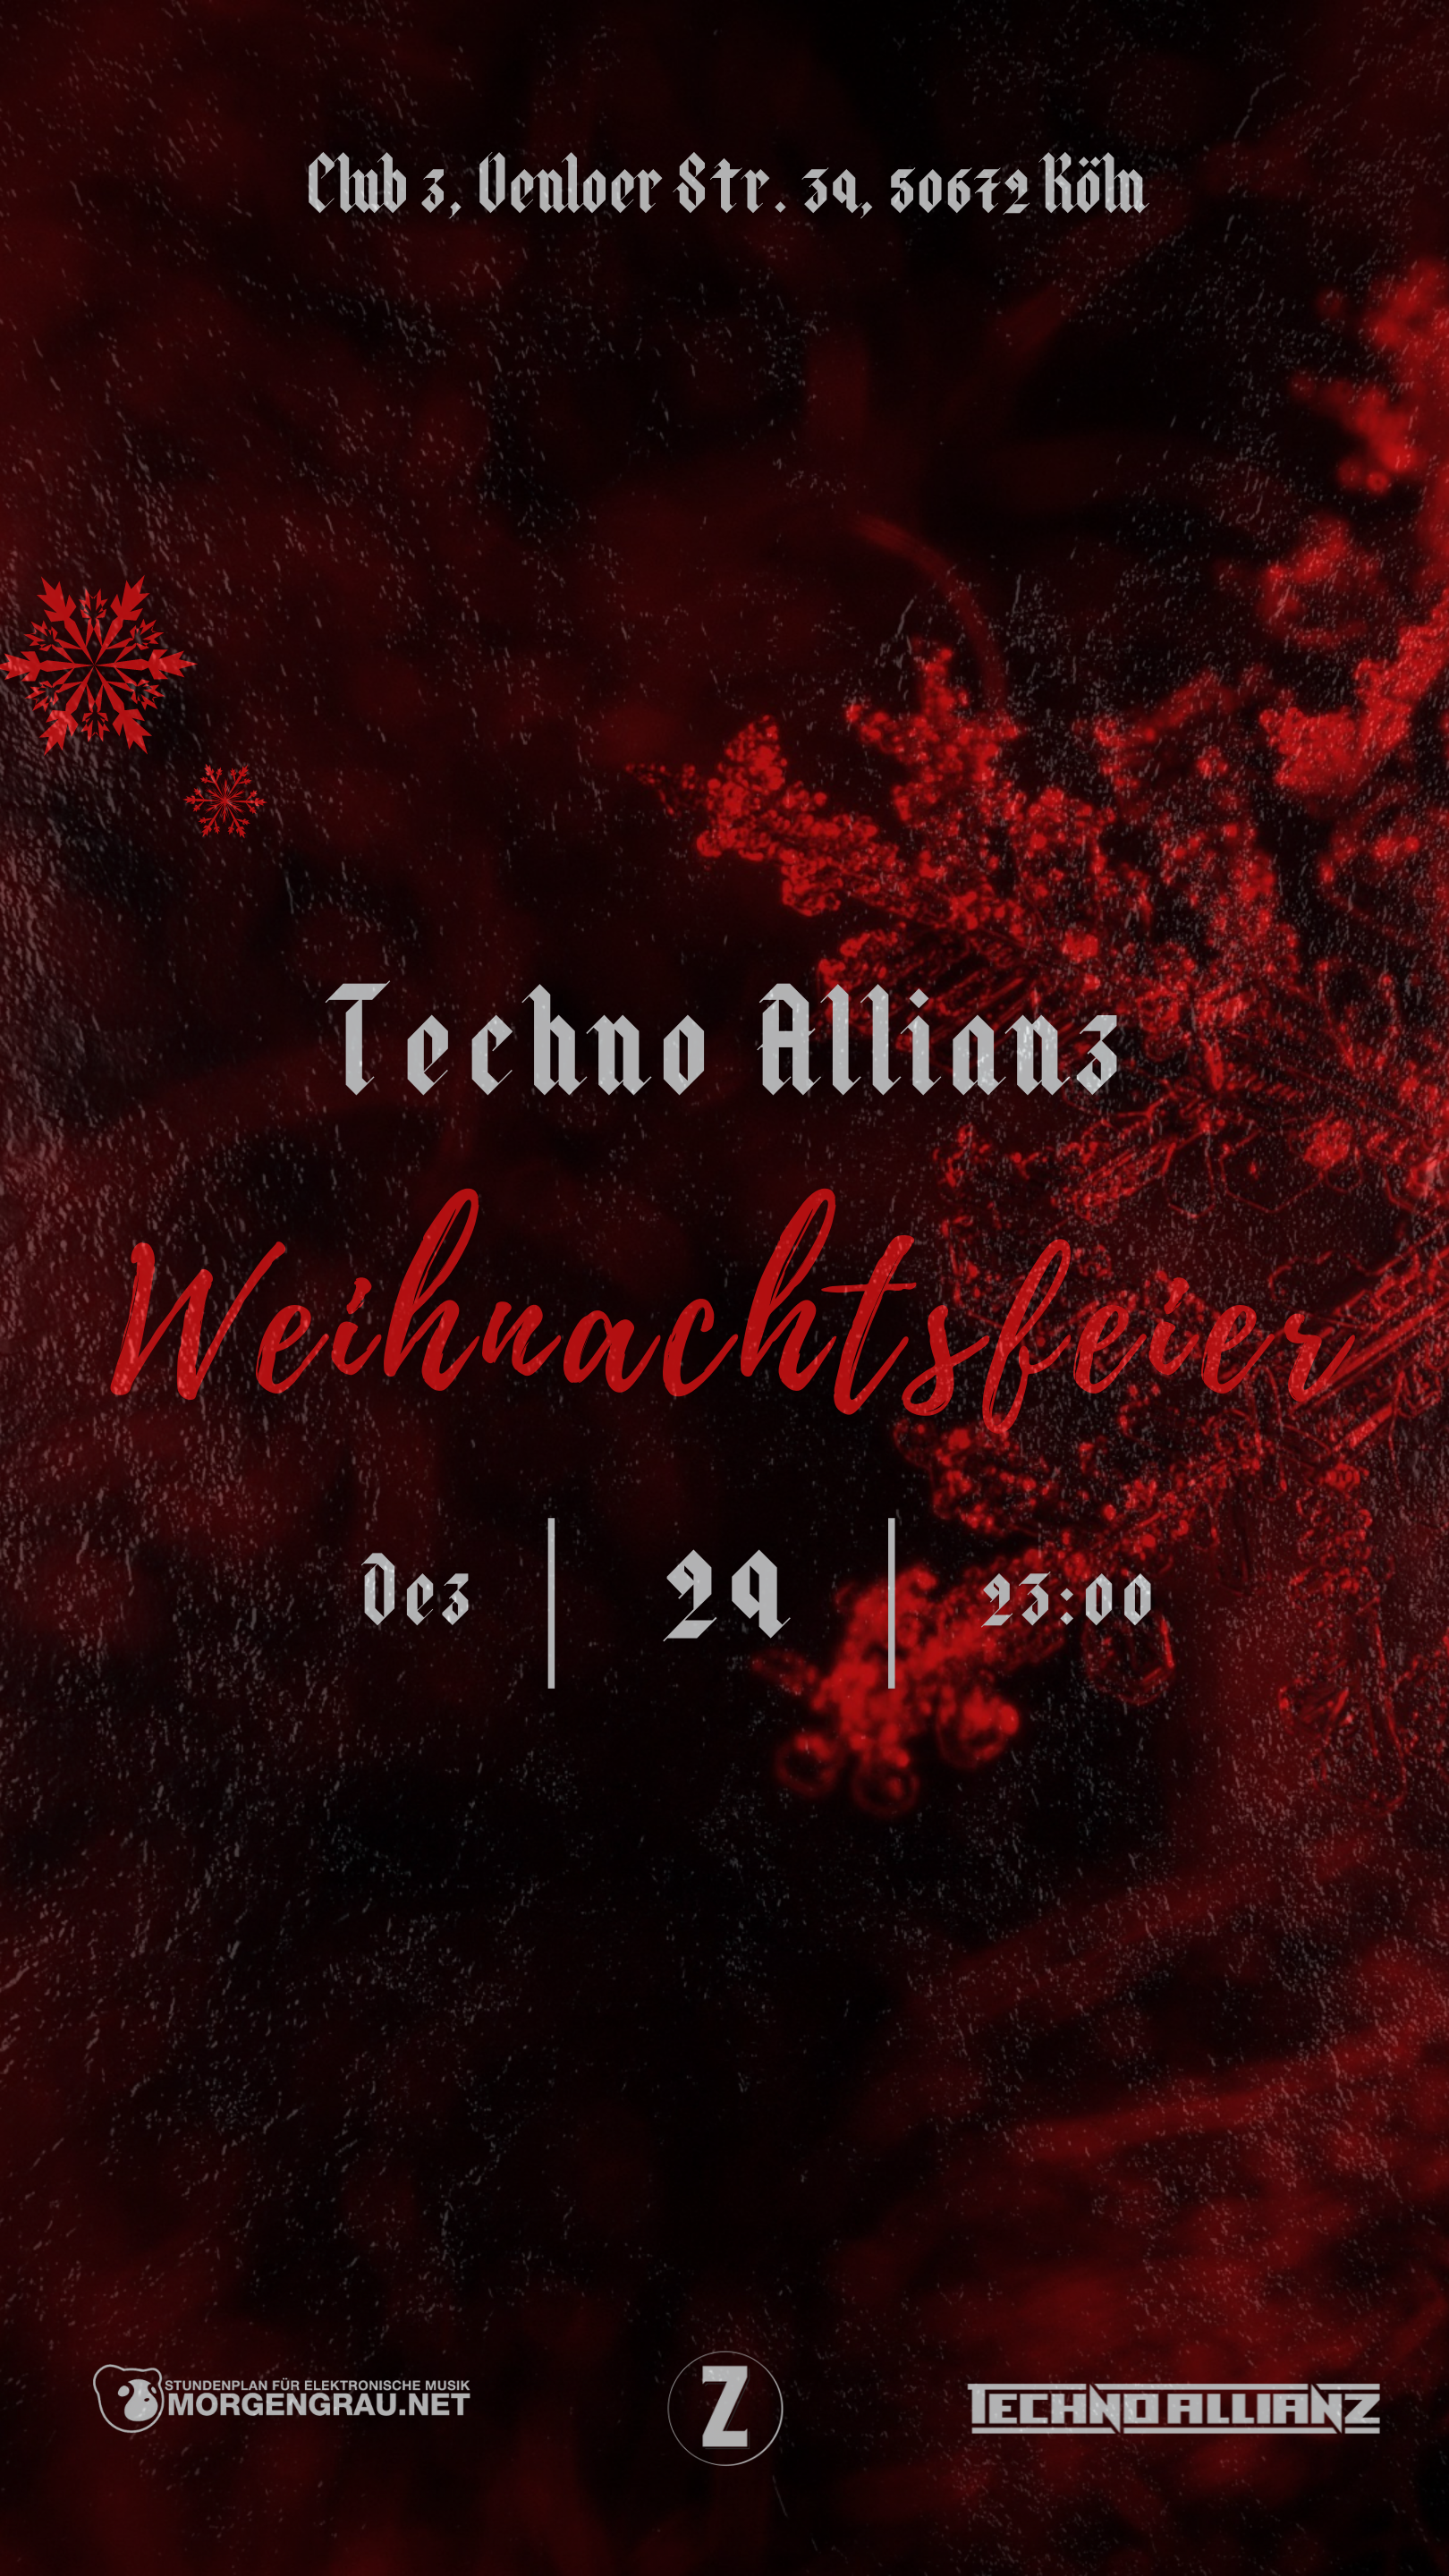 Techno Allianz Weihnachtsfeier - フライヤー表